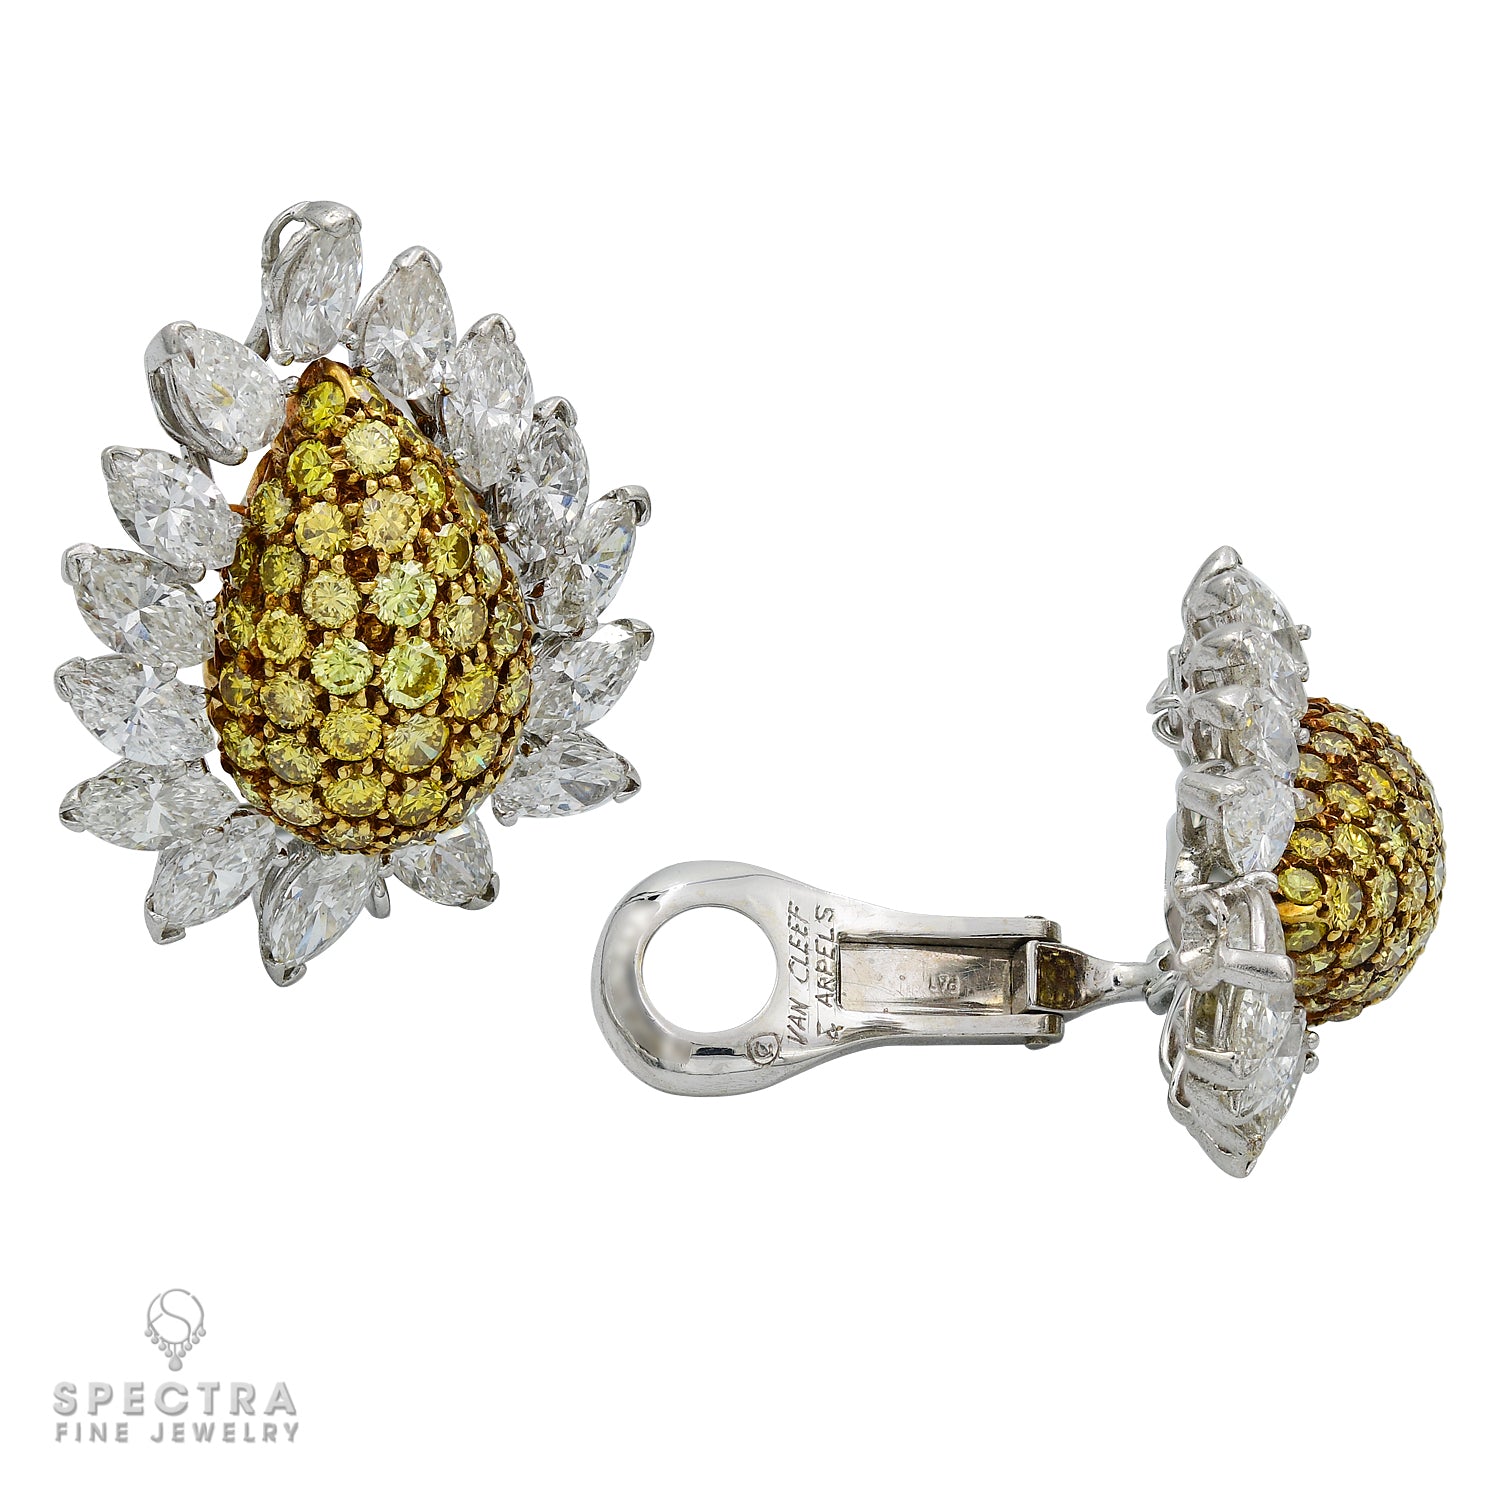 Van Cleef & Arpels Yellow and White Diamond Flower Earrings